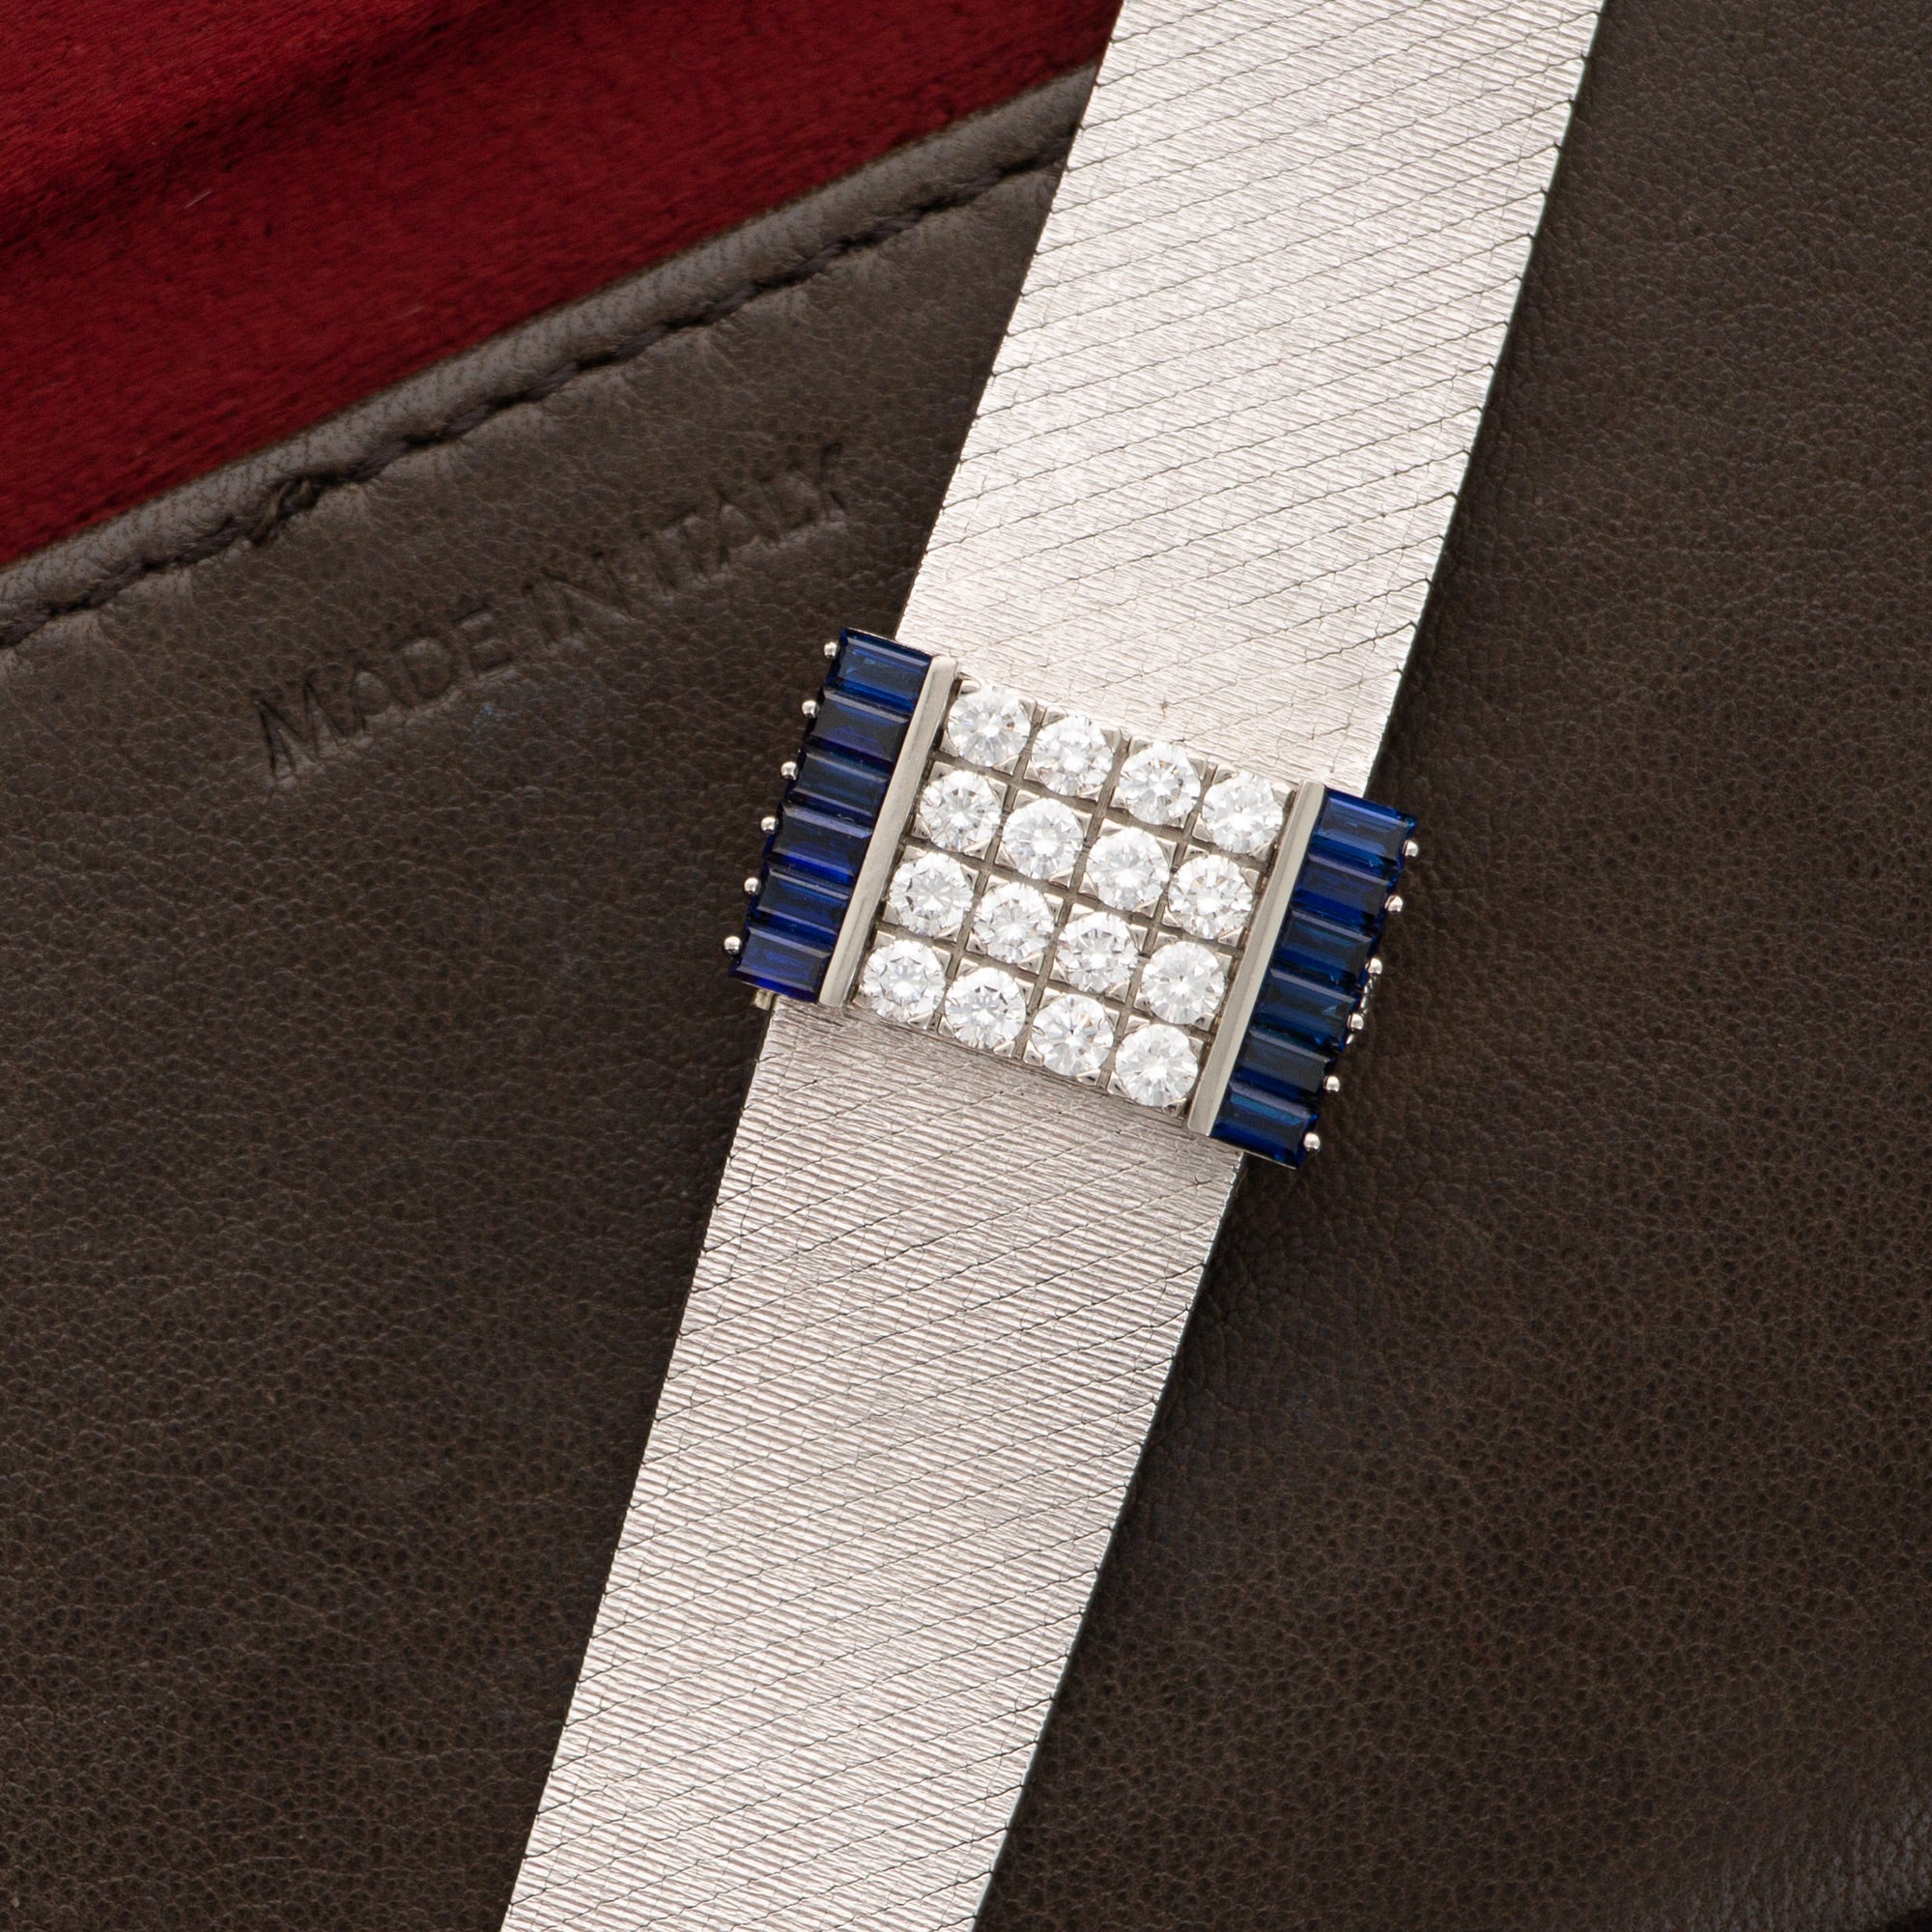 Patek Philippe - Patek Philippe White Gold Diamond & Sapphire Watch Ref. 3319 - The Keystone Watches